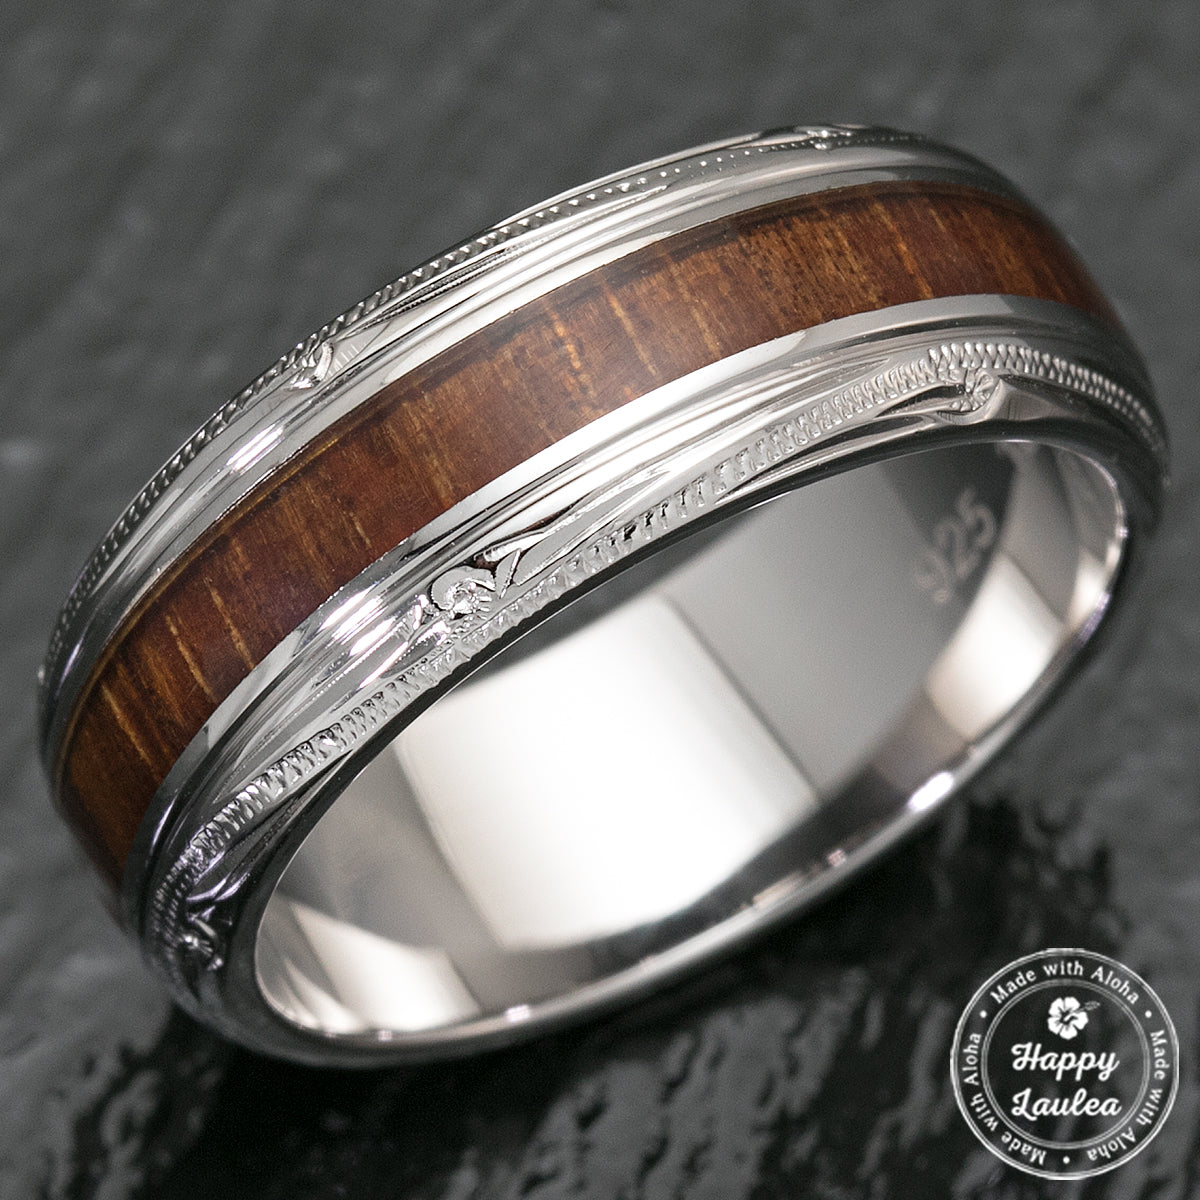 Pair of Platinum & Sterling Silver Koa Wood Hawaiian Jewelry Rings - 3